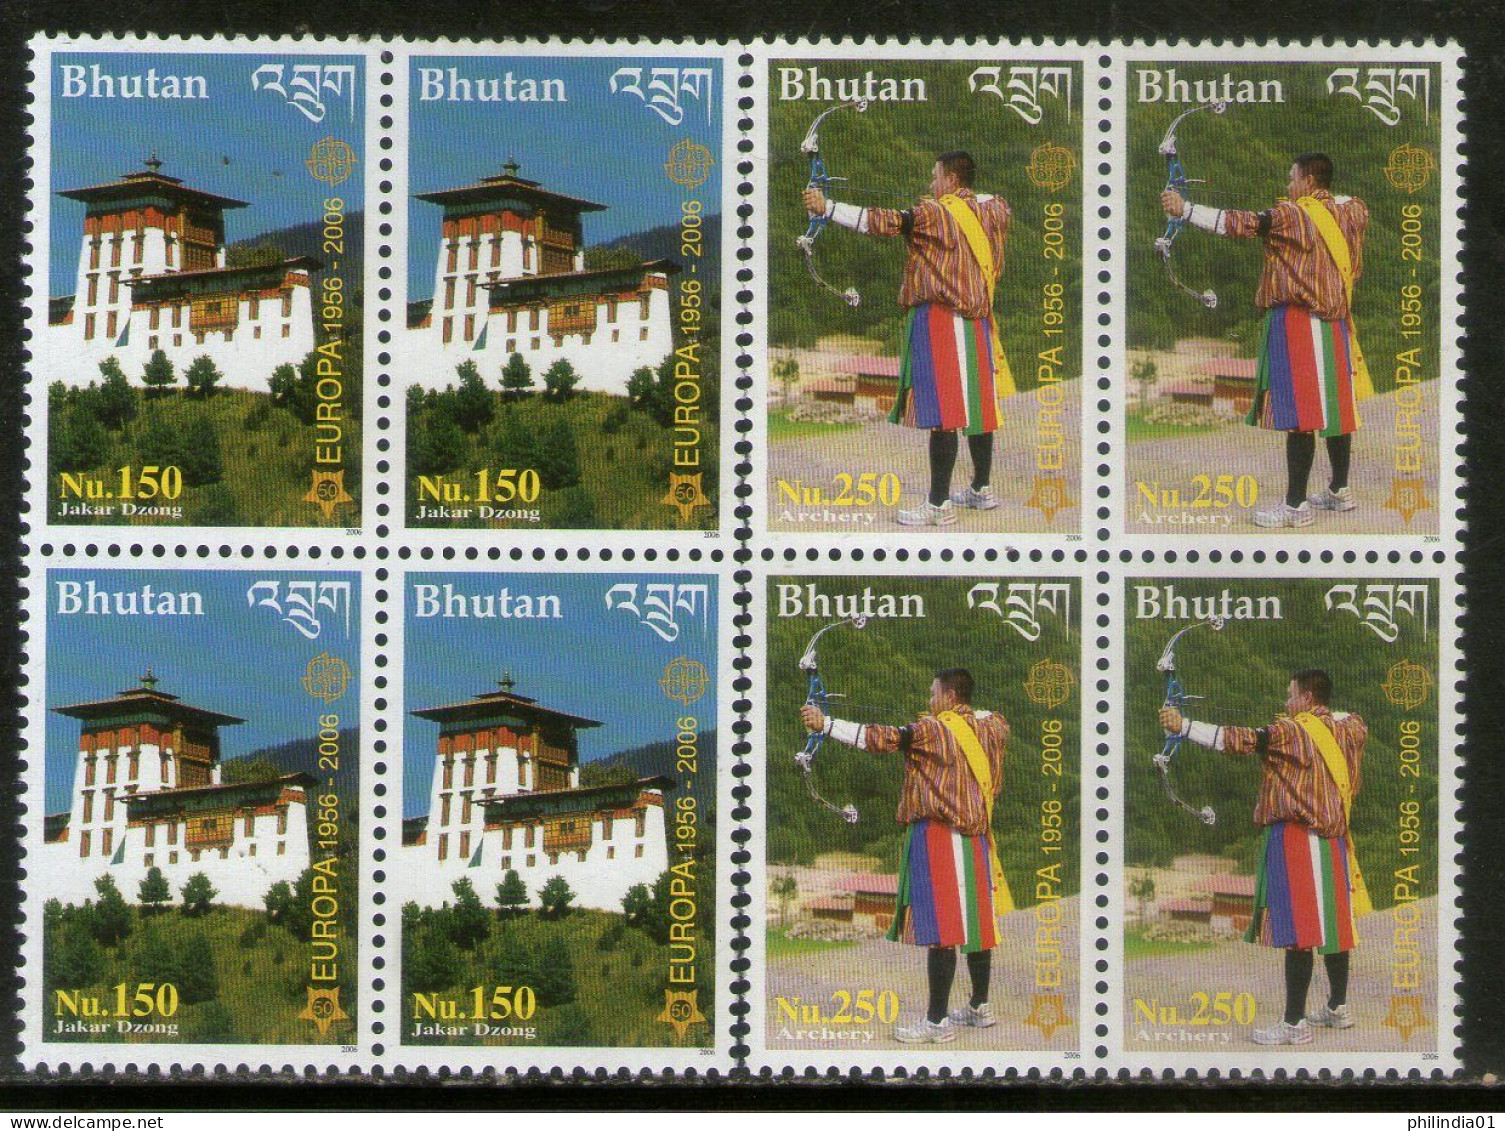 Bhutan 2006 Europa Dzong & Archery Sc 1421-22 High Value 2v BLK/4 MNH # 38b - Tir à L'Arc